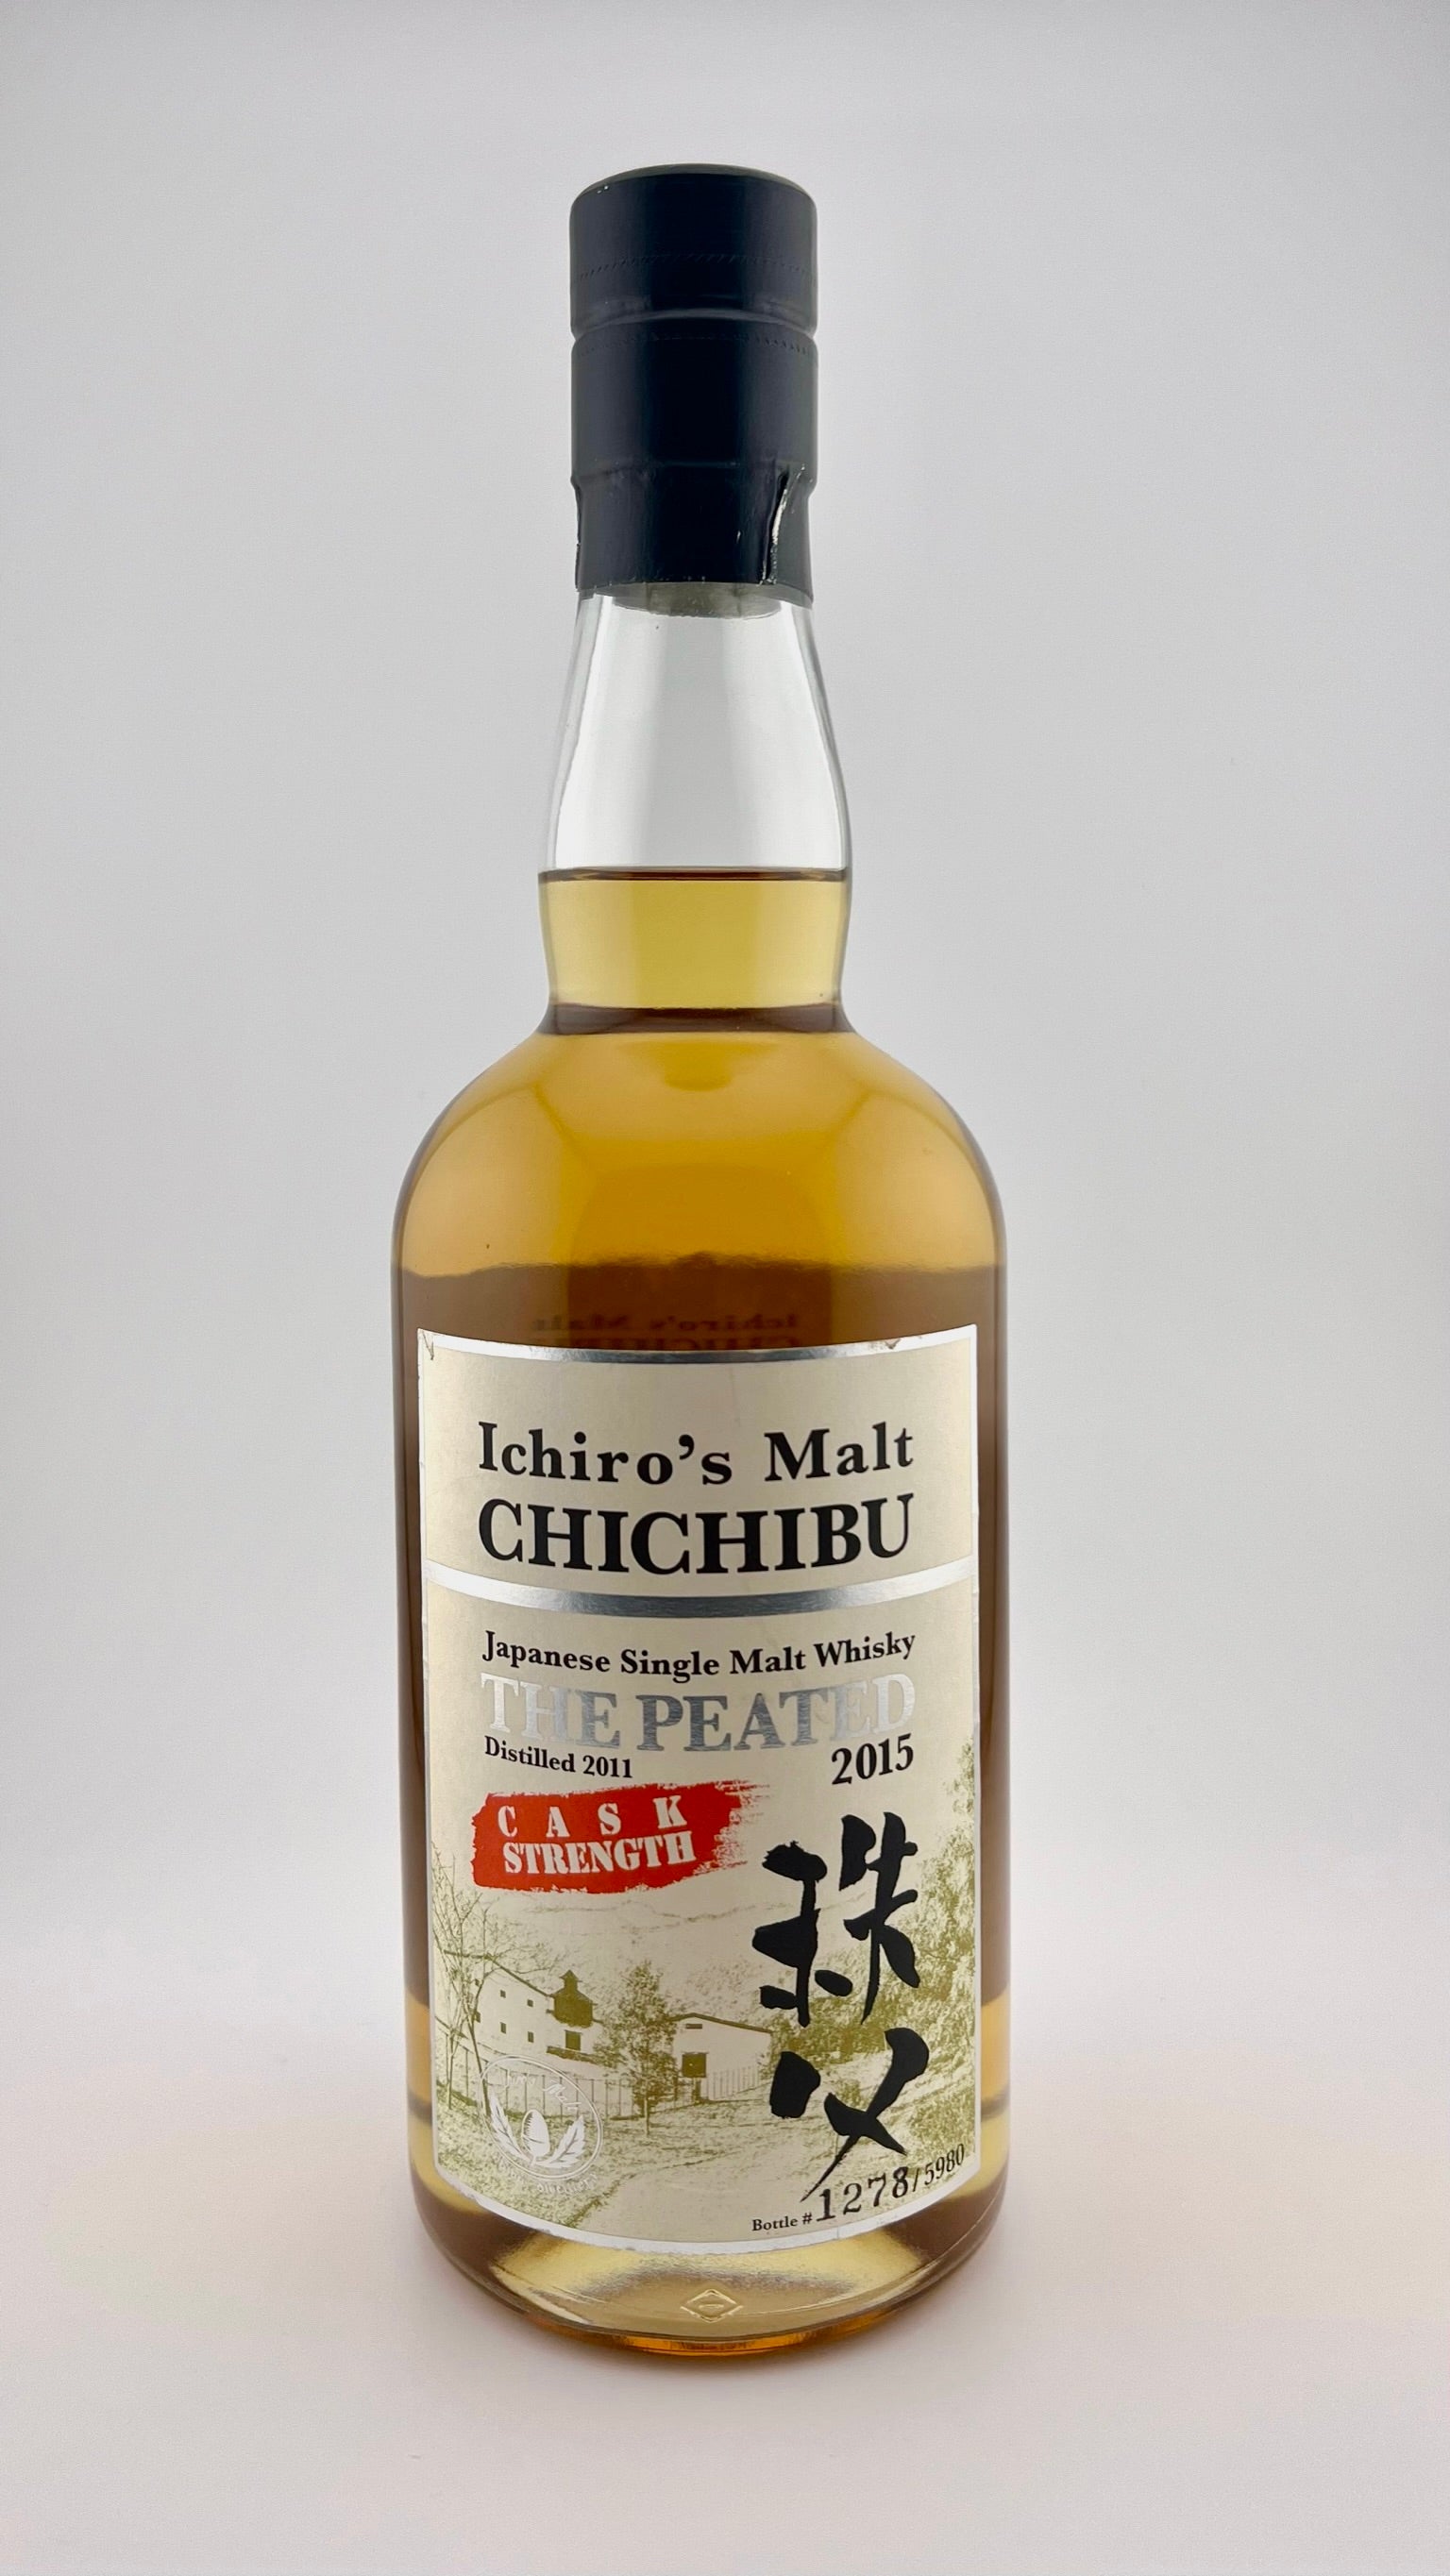 Ichiro's Malt Chichibu The Peated 2015